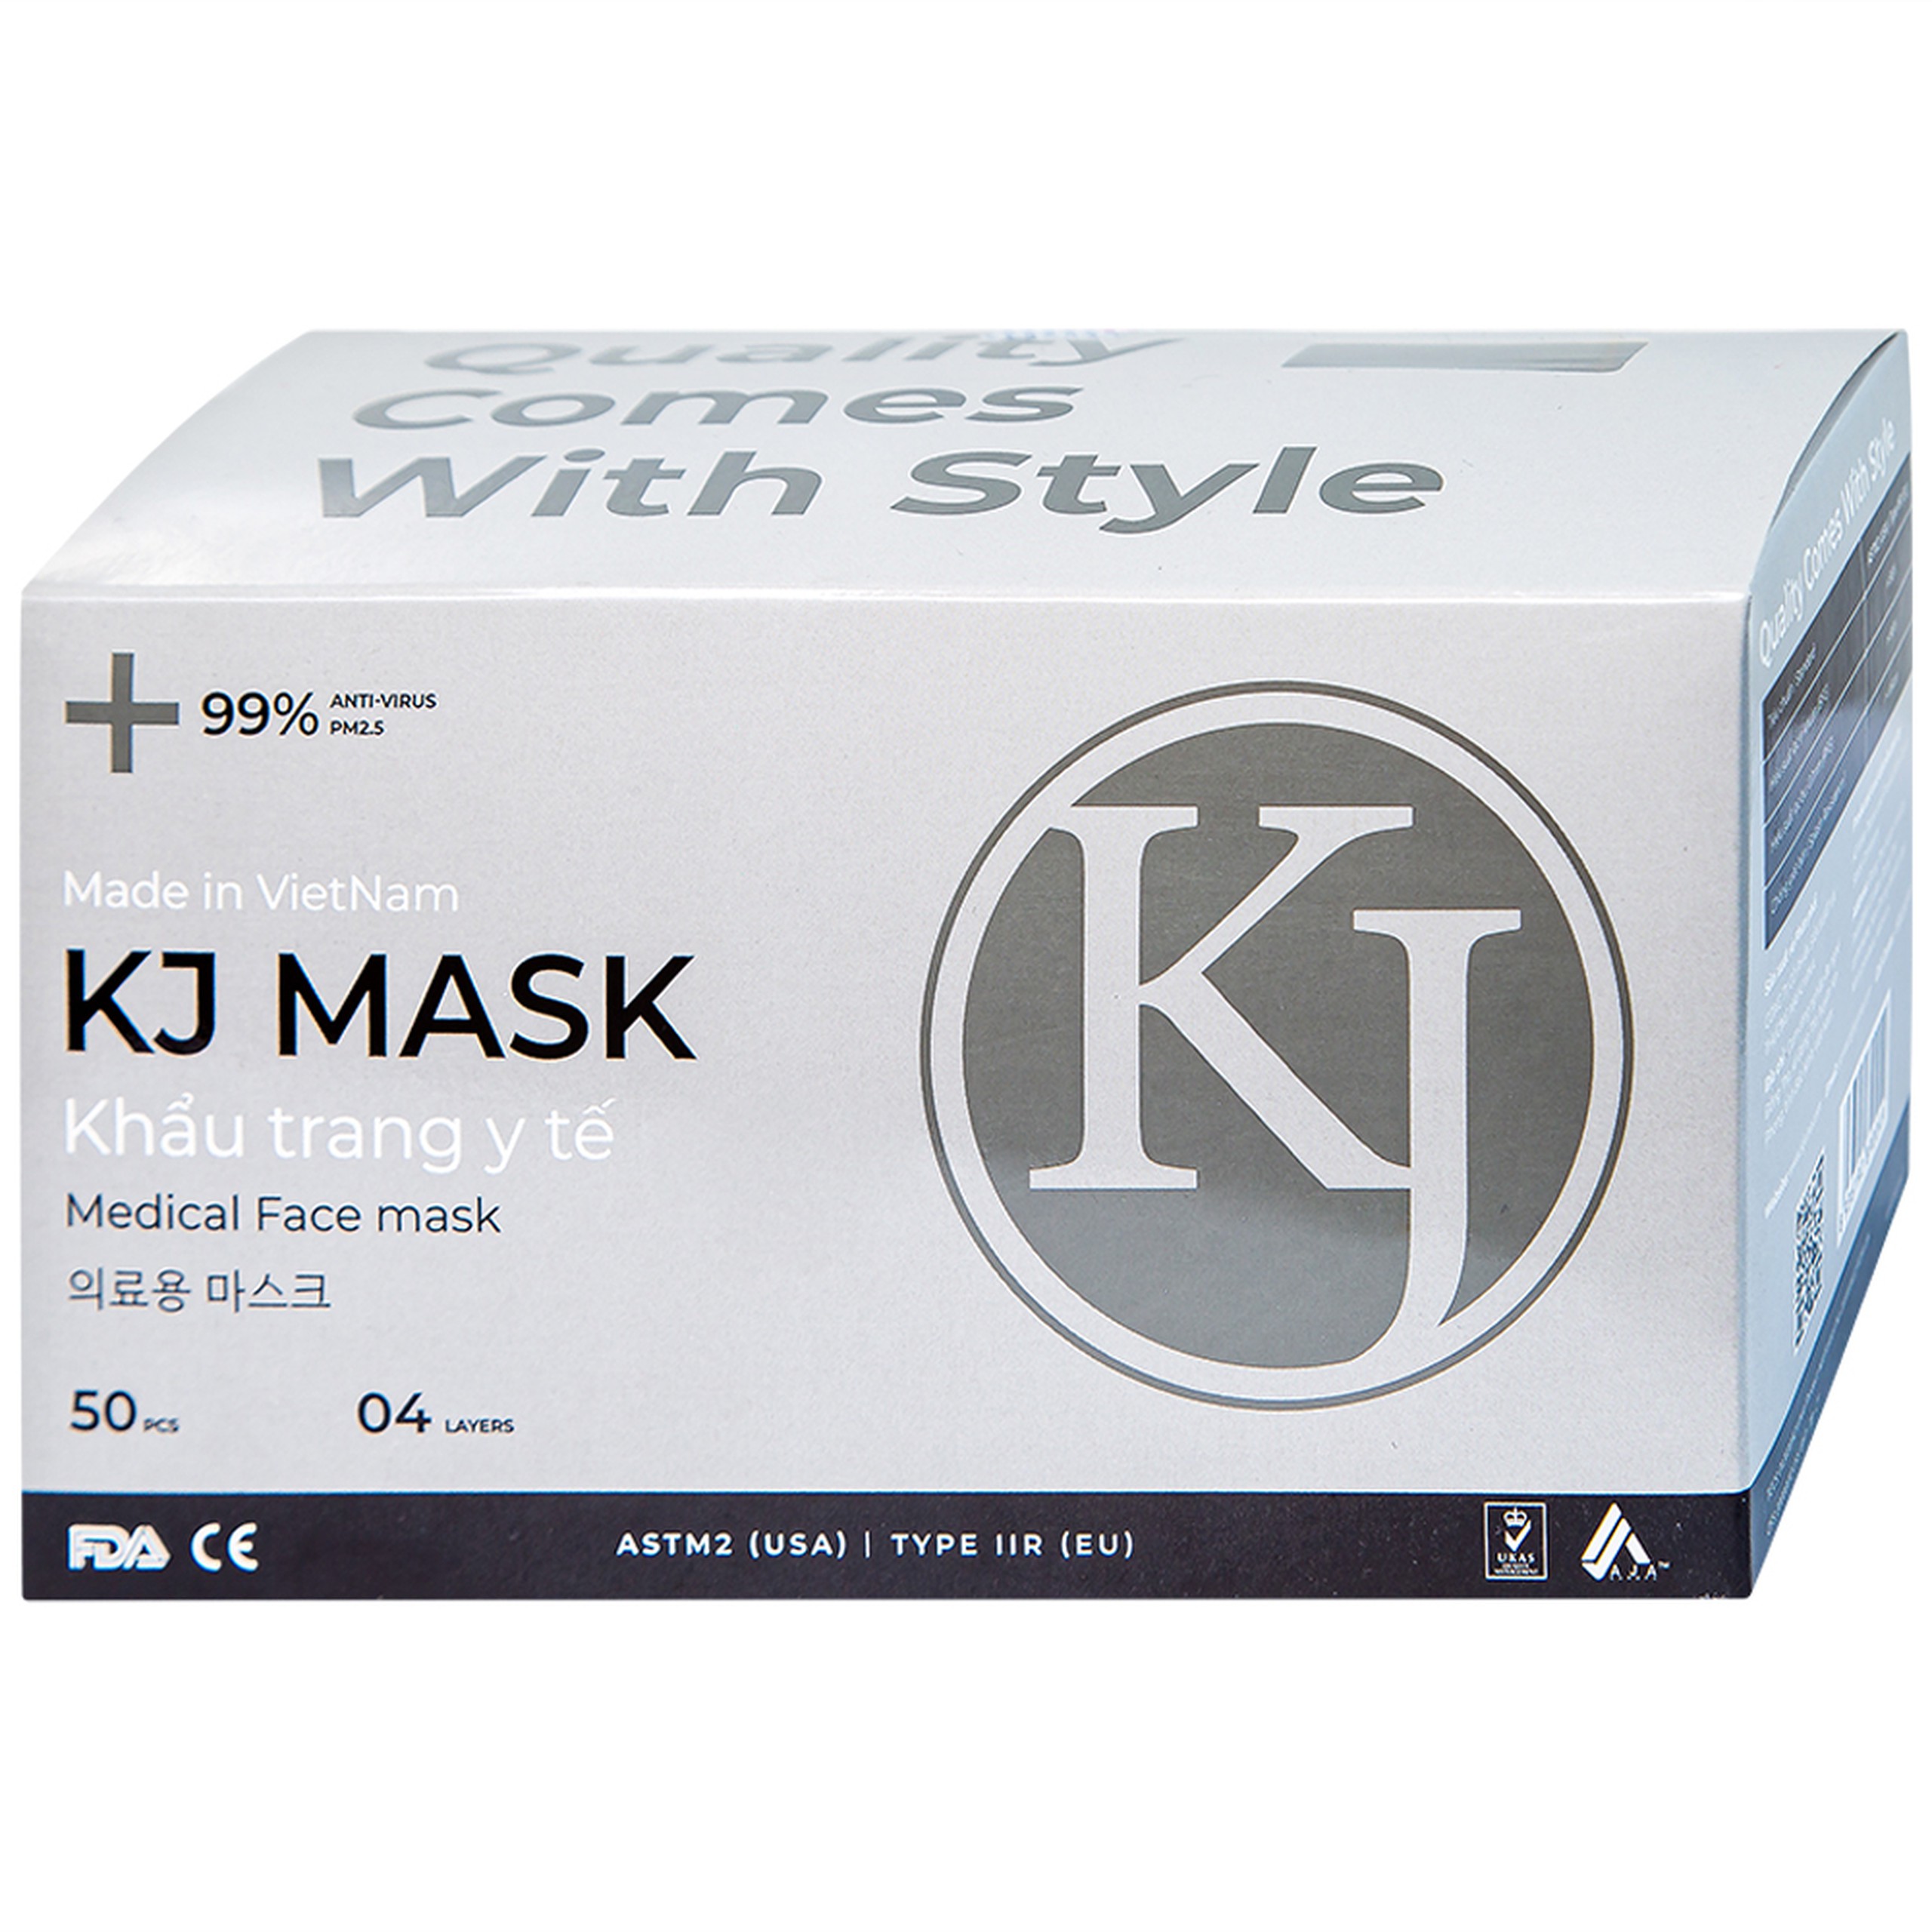 Khẩu trang y tế KJ Mask màu đen 4 lớp hỗ trợ ngăn khói, bụi, kháng khuẩn (50 cái)